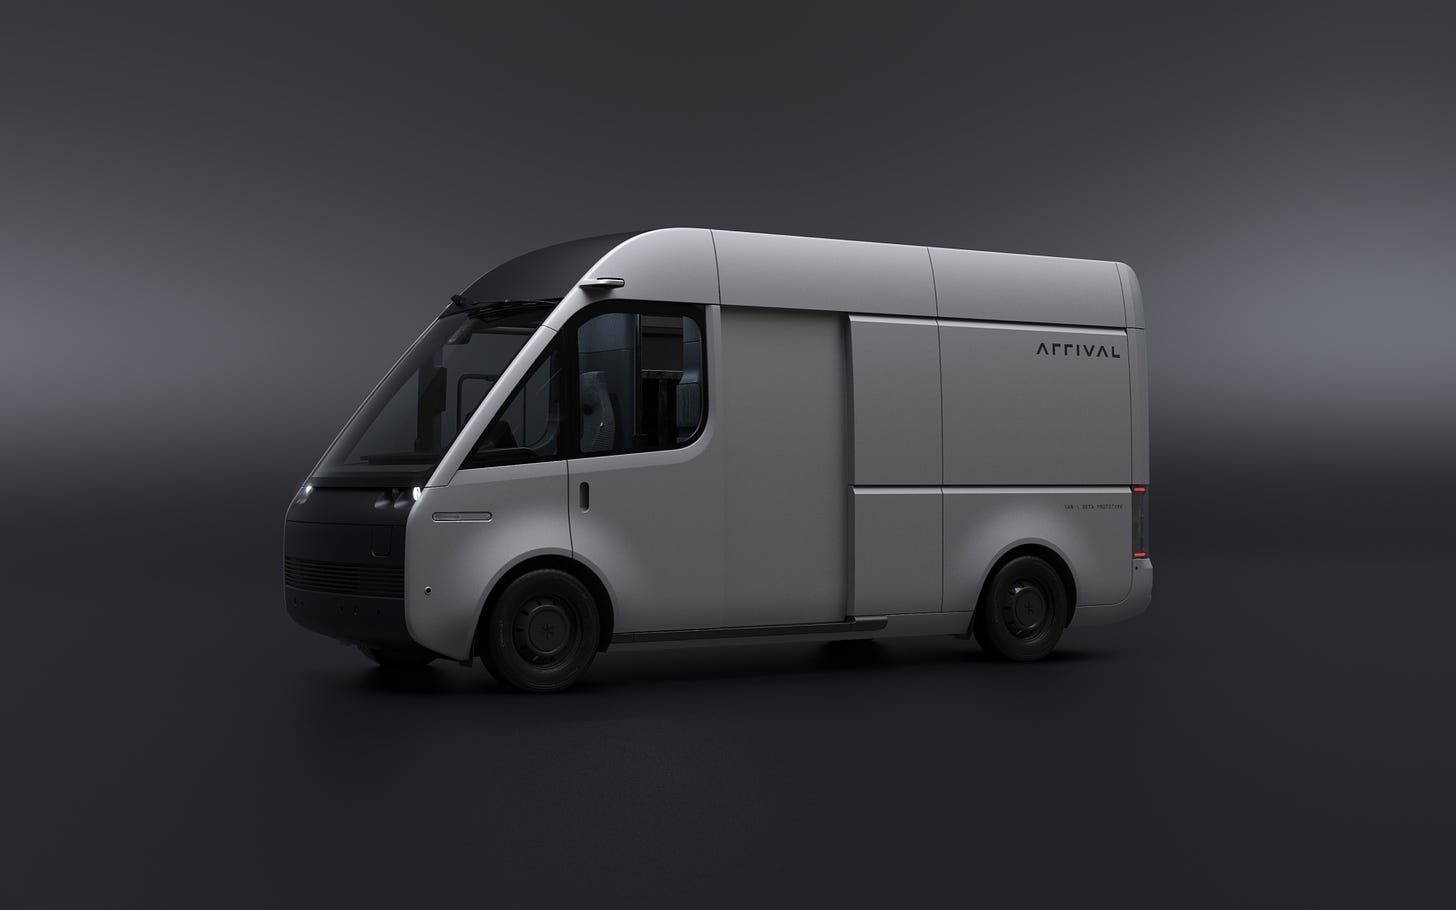 Grey Arrival Van Side View with Nearside Door Open, on a Dark Background